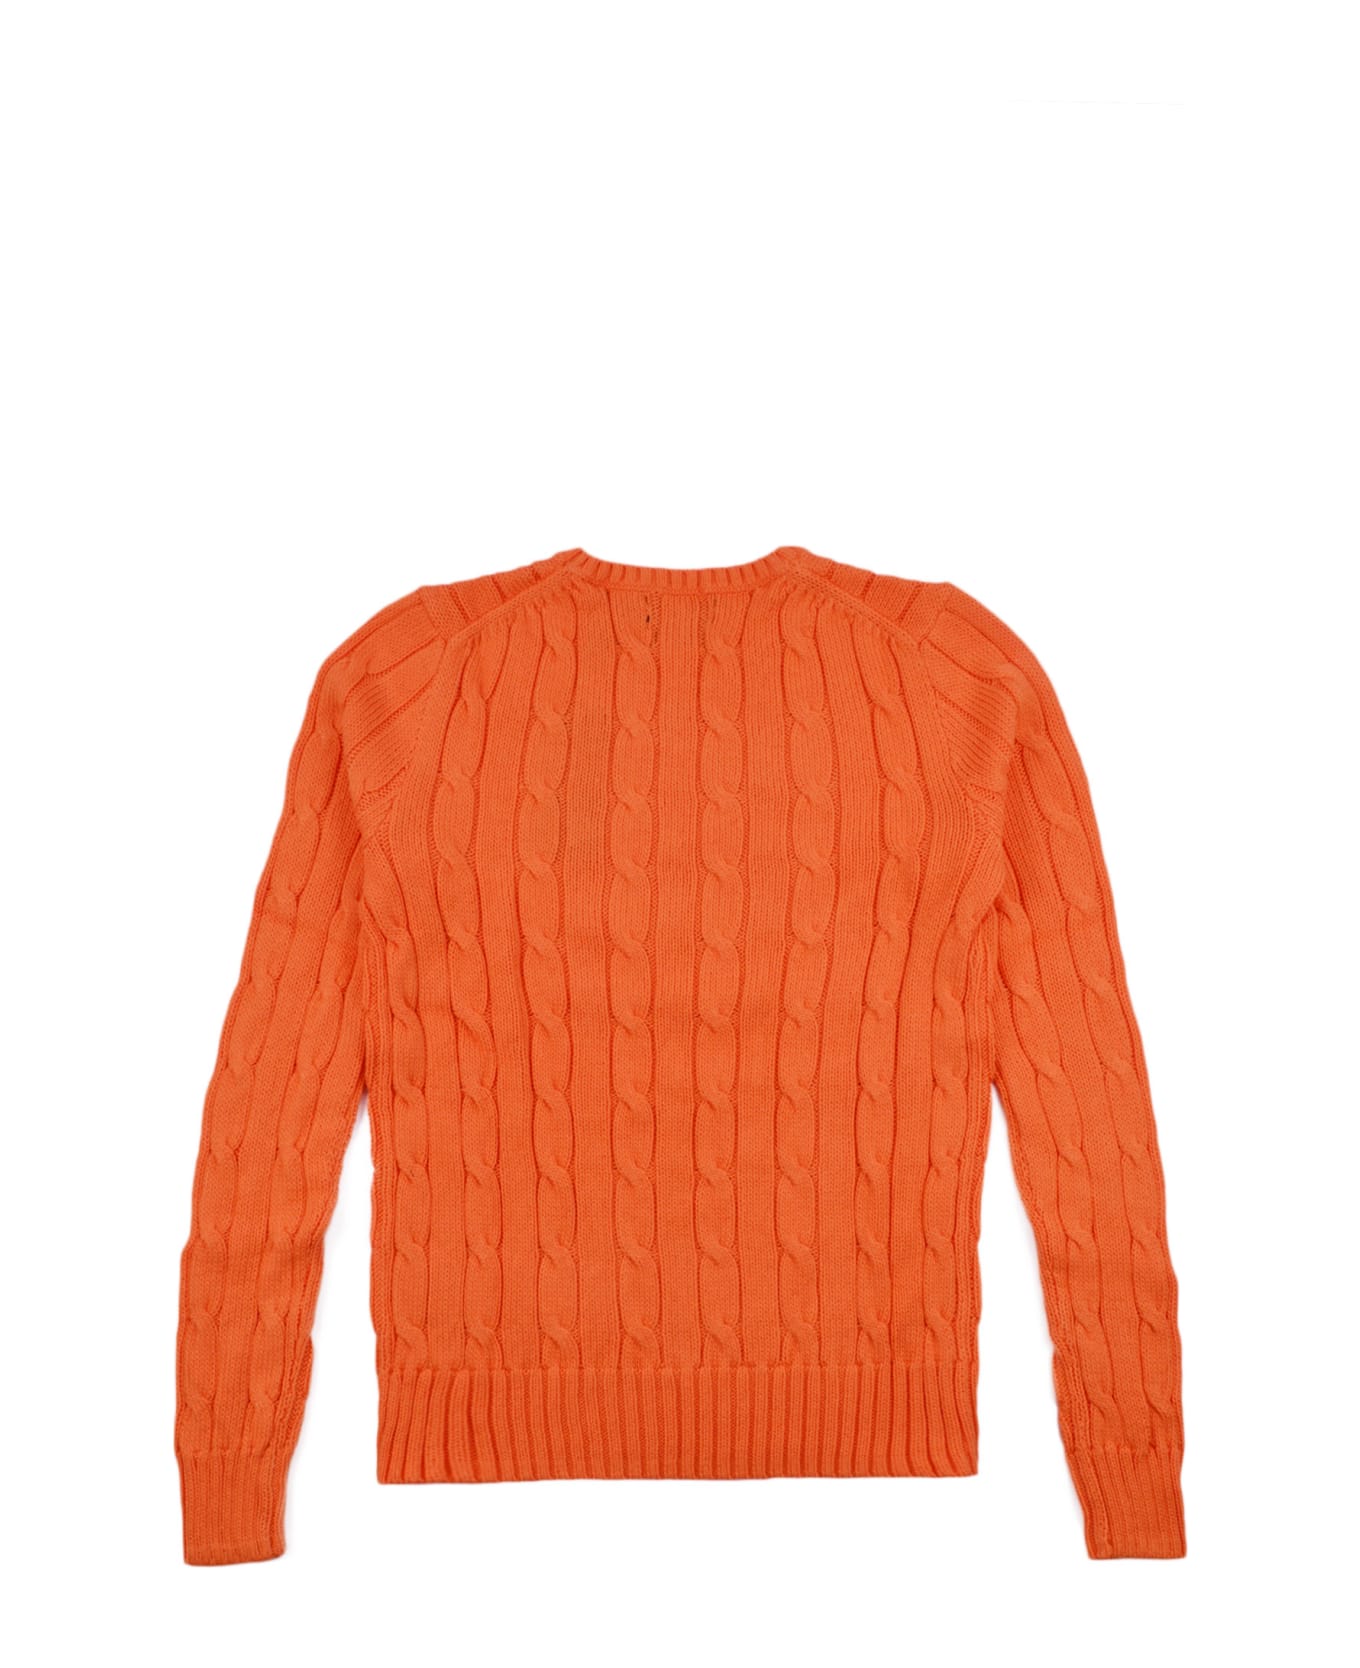 Polo Ralph Lauren Sweater - Orange ニットウェア